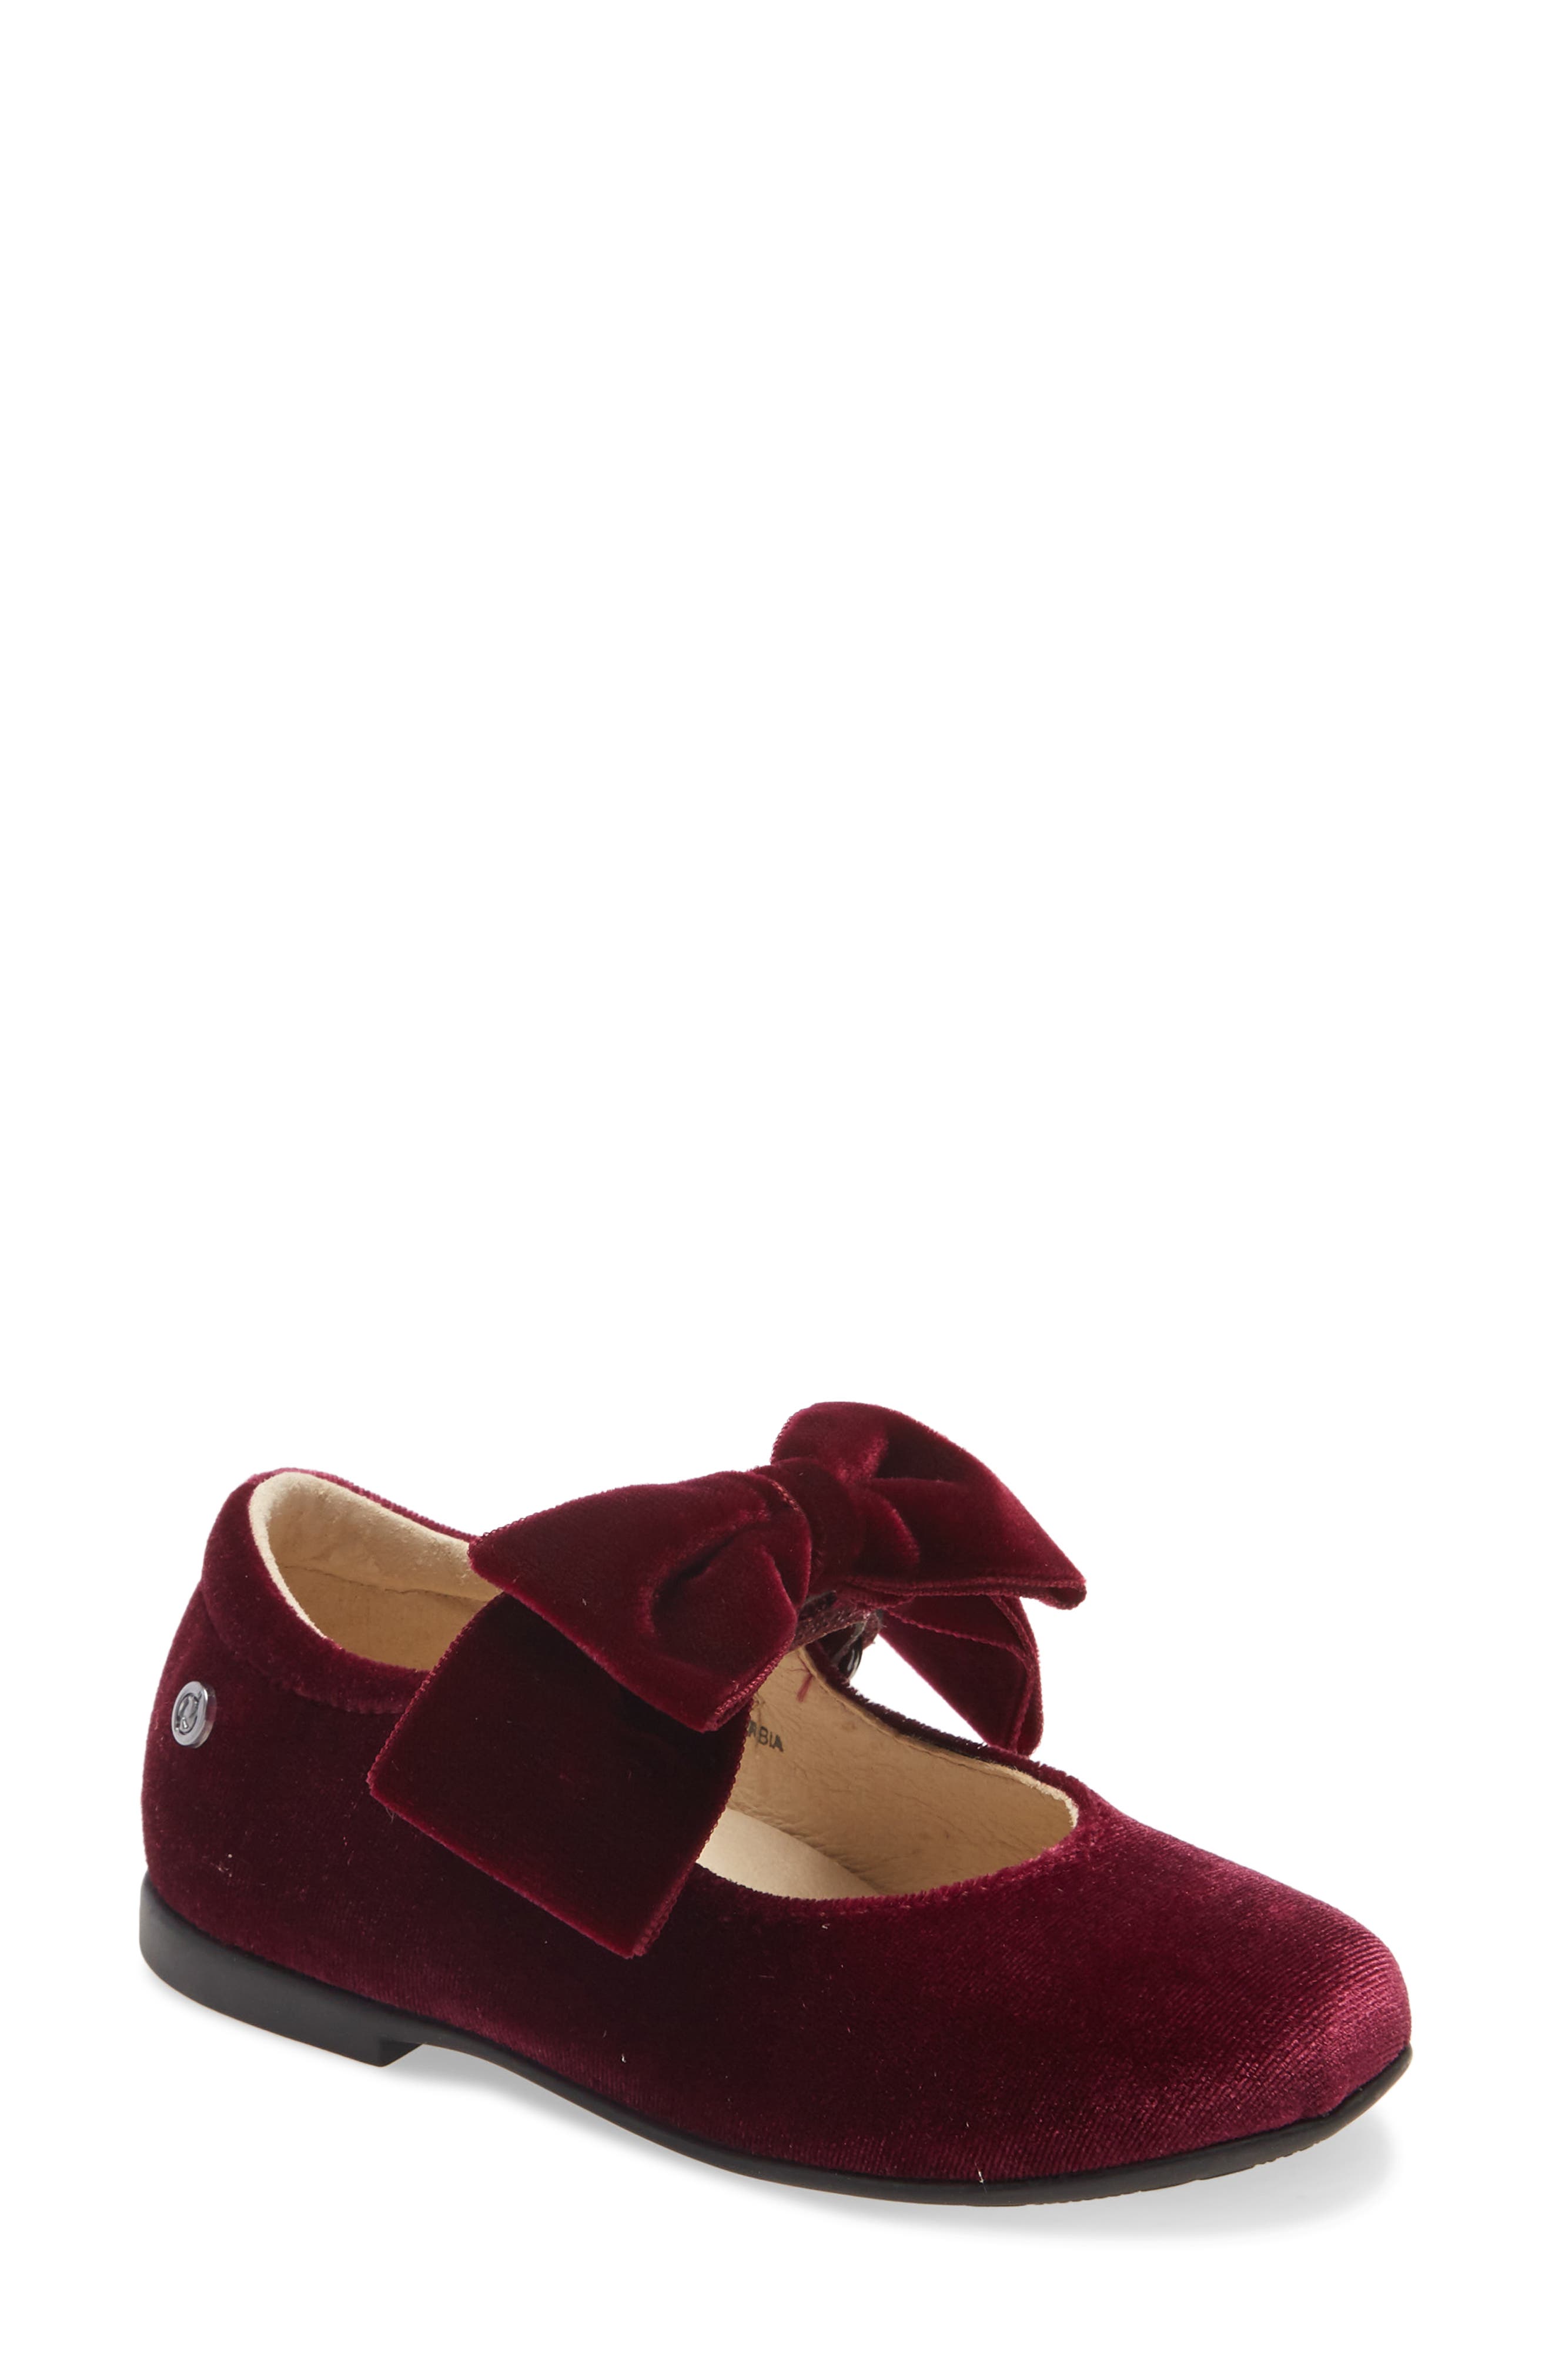 burgundy little girl shoes